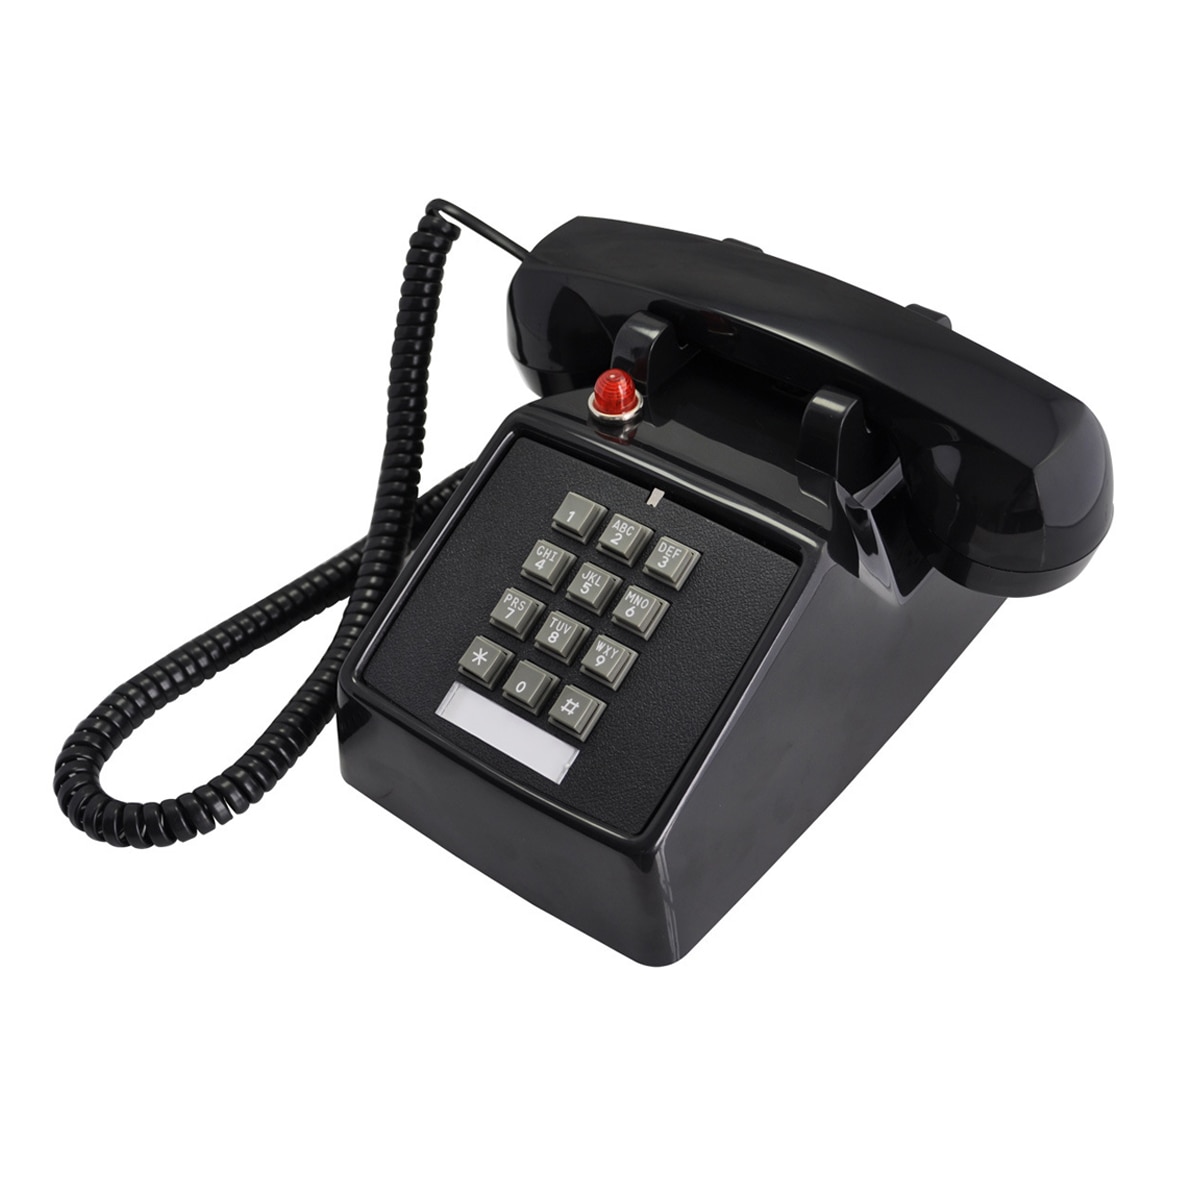 Téléphone filaire rétro classique rouge analogique, Vintage, ancien, à la , fixe, pour maison, bureau, hôtel